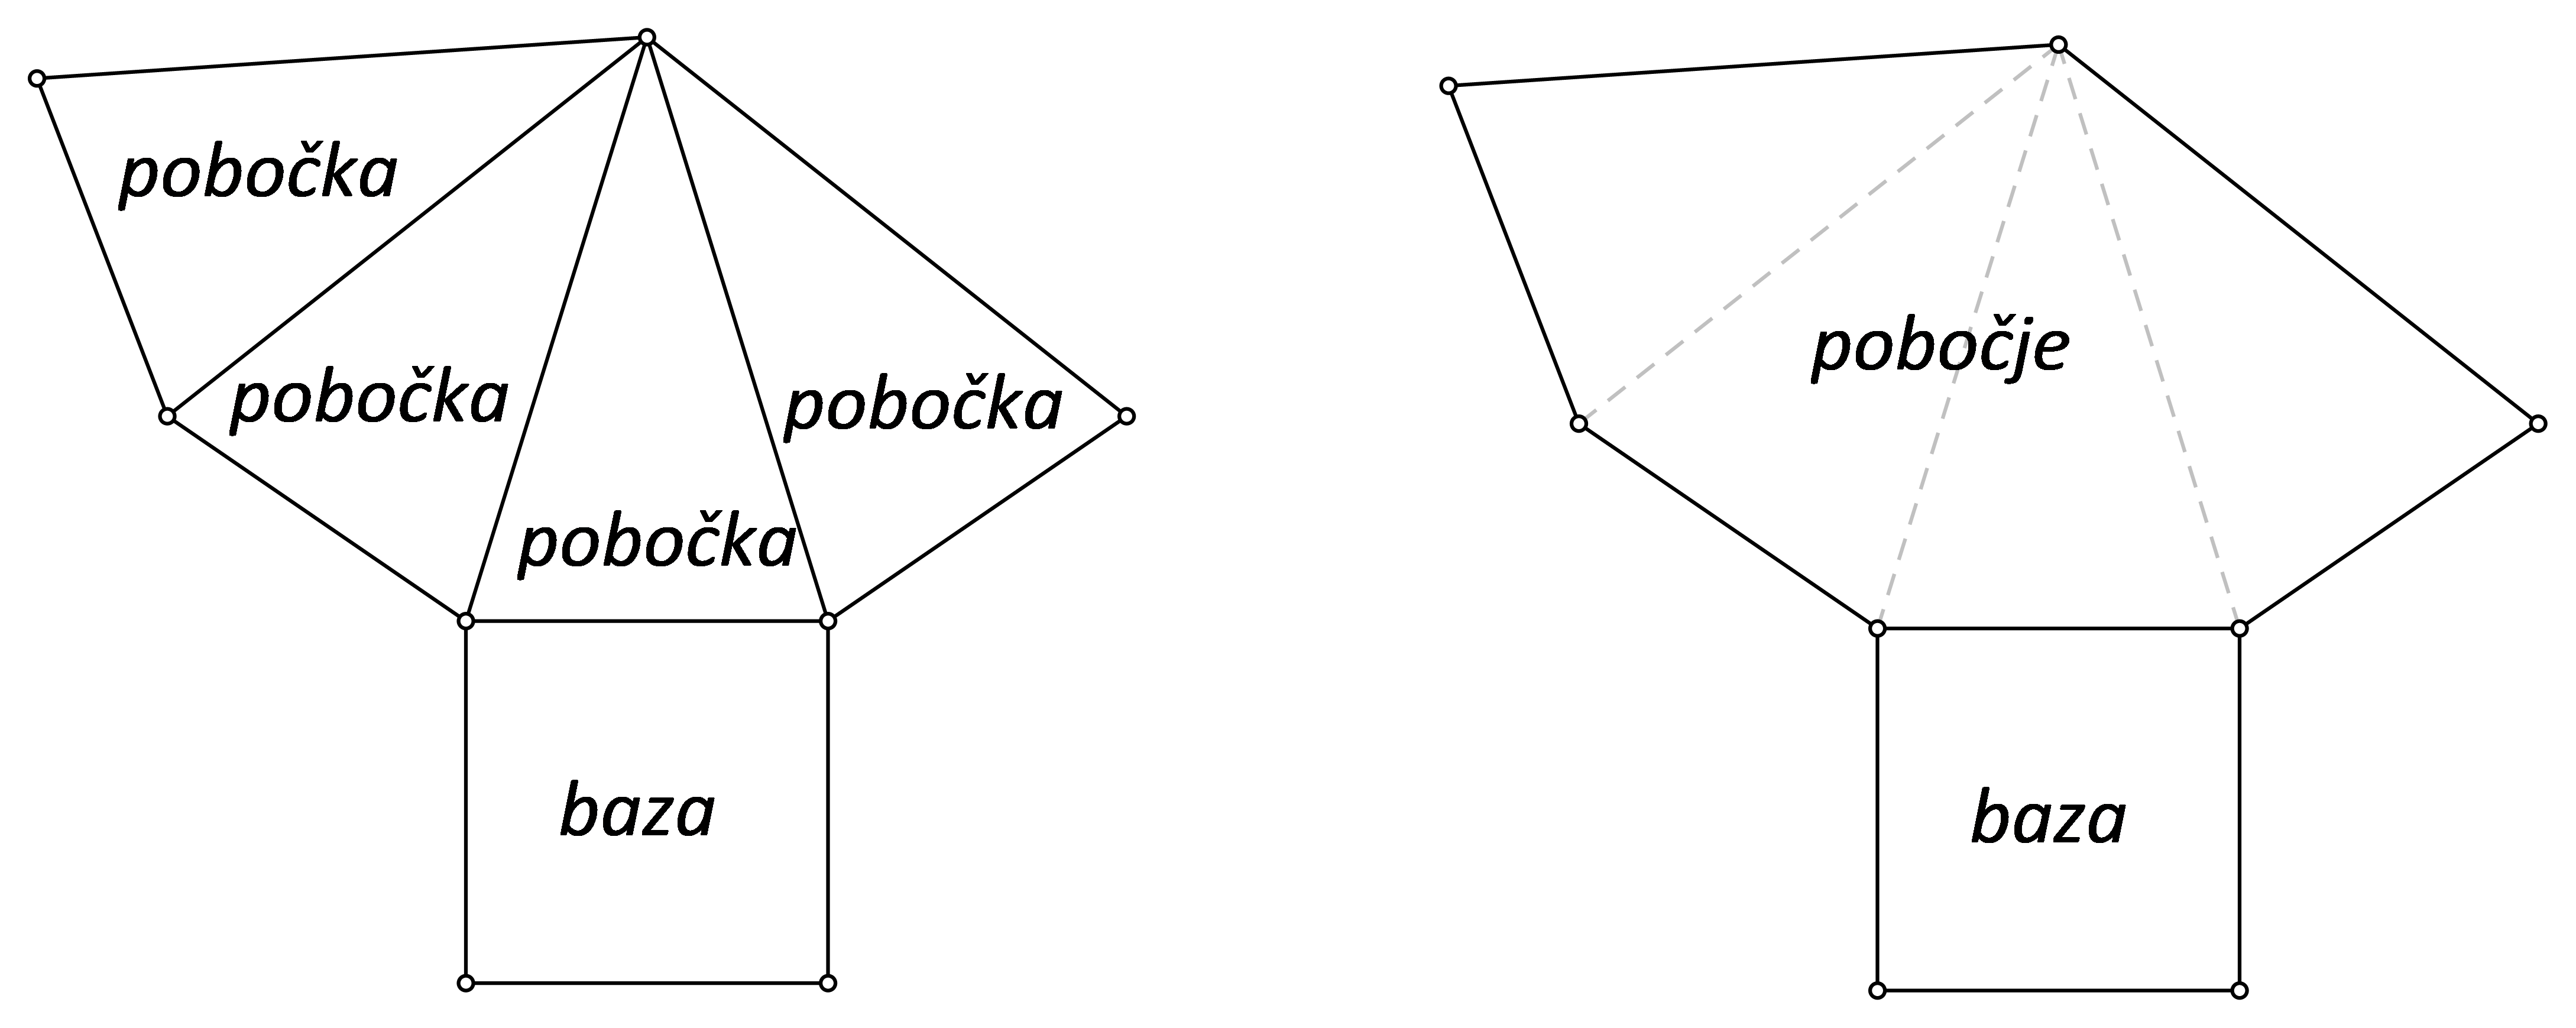 Slika prikazuje mrežu pravilne četverostrane piramide s nazivima pojedinih dijelova.